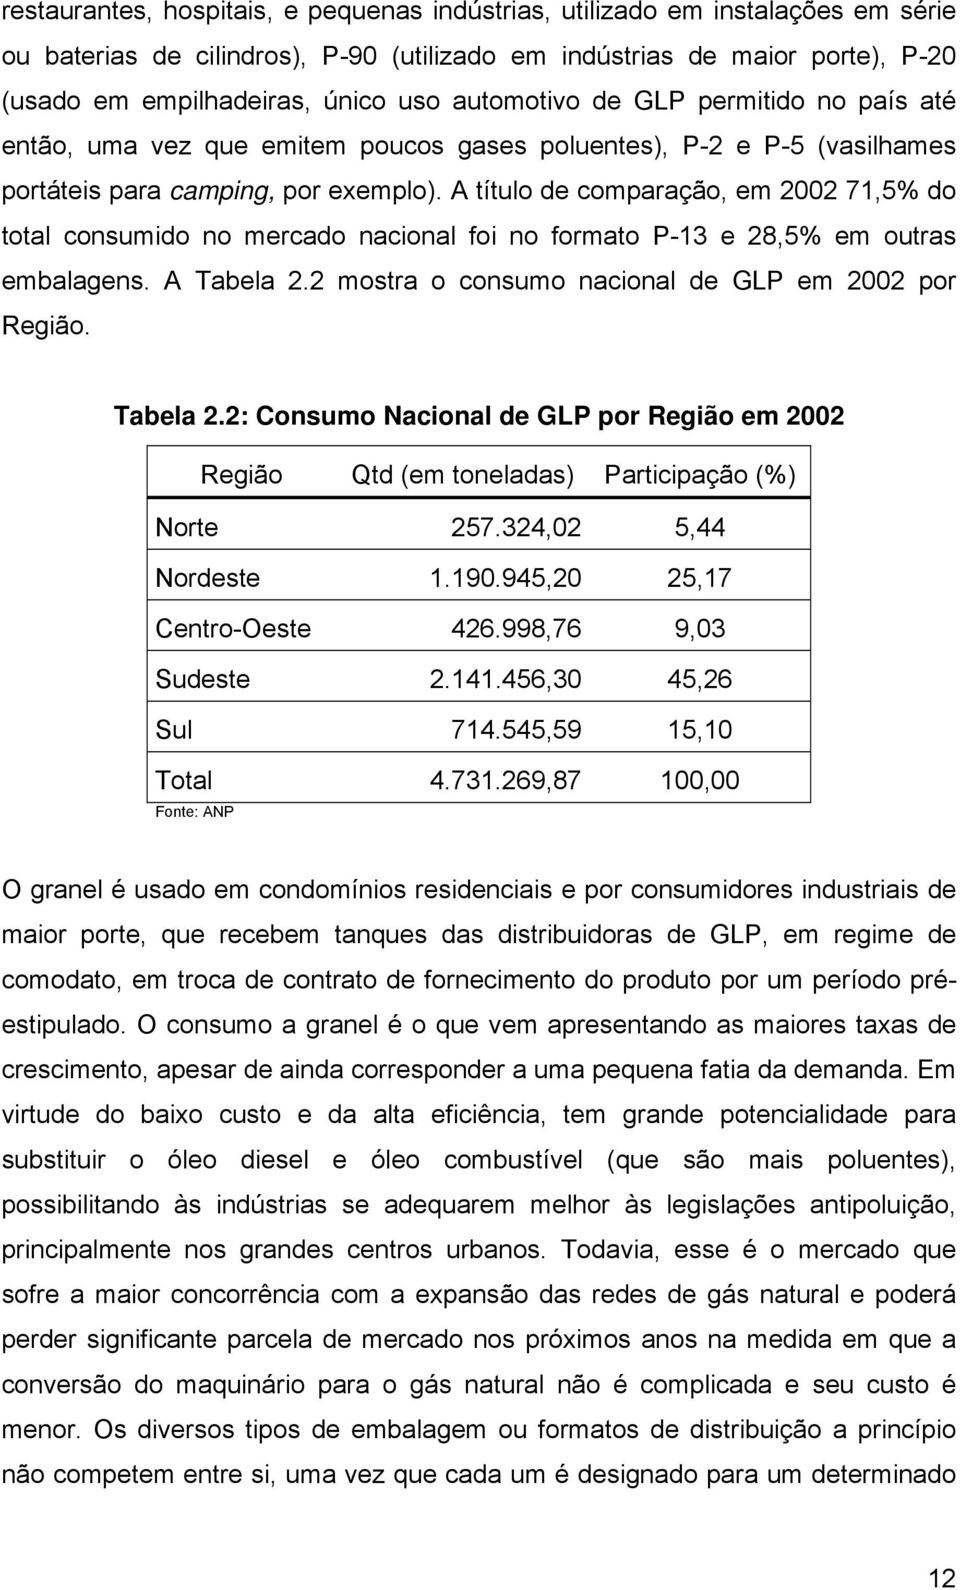 A título de comparação, em 2002 71,5% do total consumdo no mercado naconal fo no formato P-13 e 28,5% em outras embalagens. A Tabela 2.